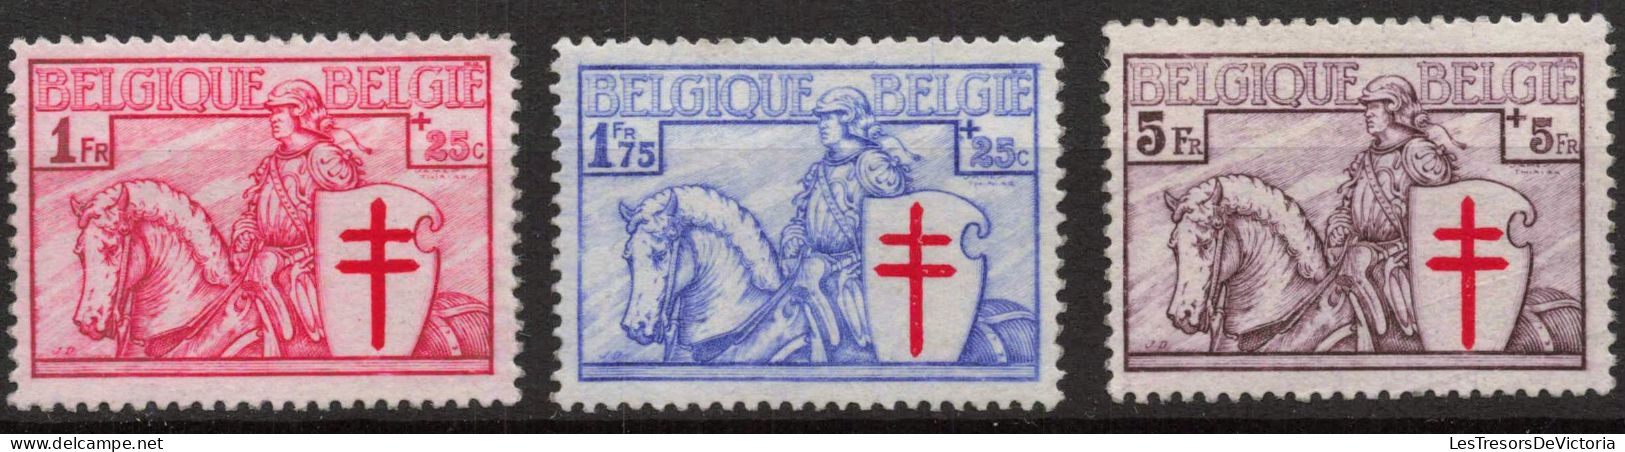 Timbres Belgique -1934 - Série Dite Chevalier - COB 394/400** MNH - Cote 625 - Unused Stamps